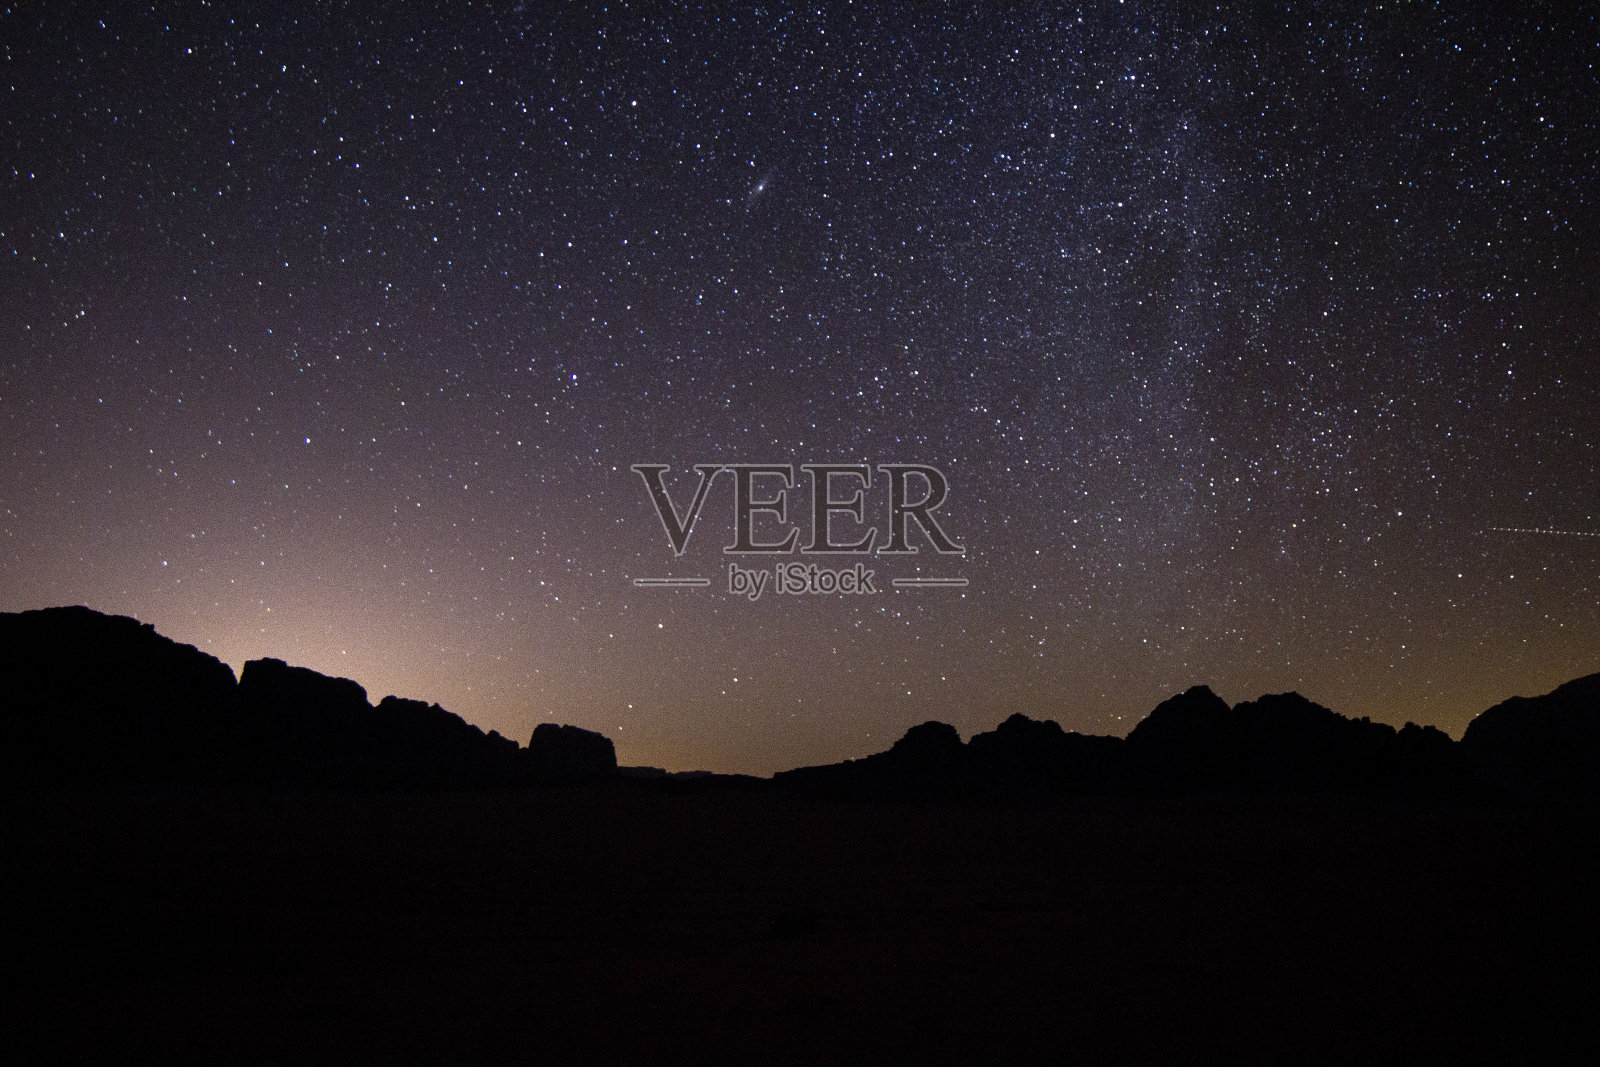 瓦迪拉姆沙漠的星夜照片摄影图片